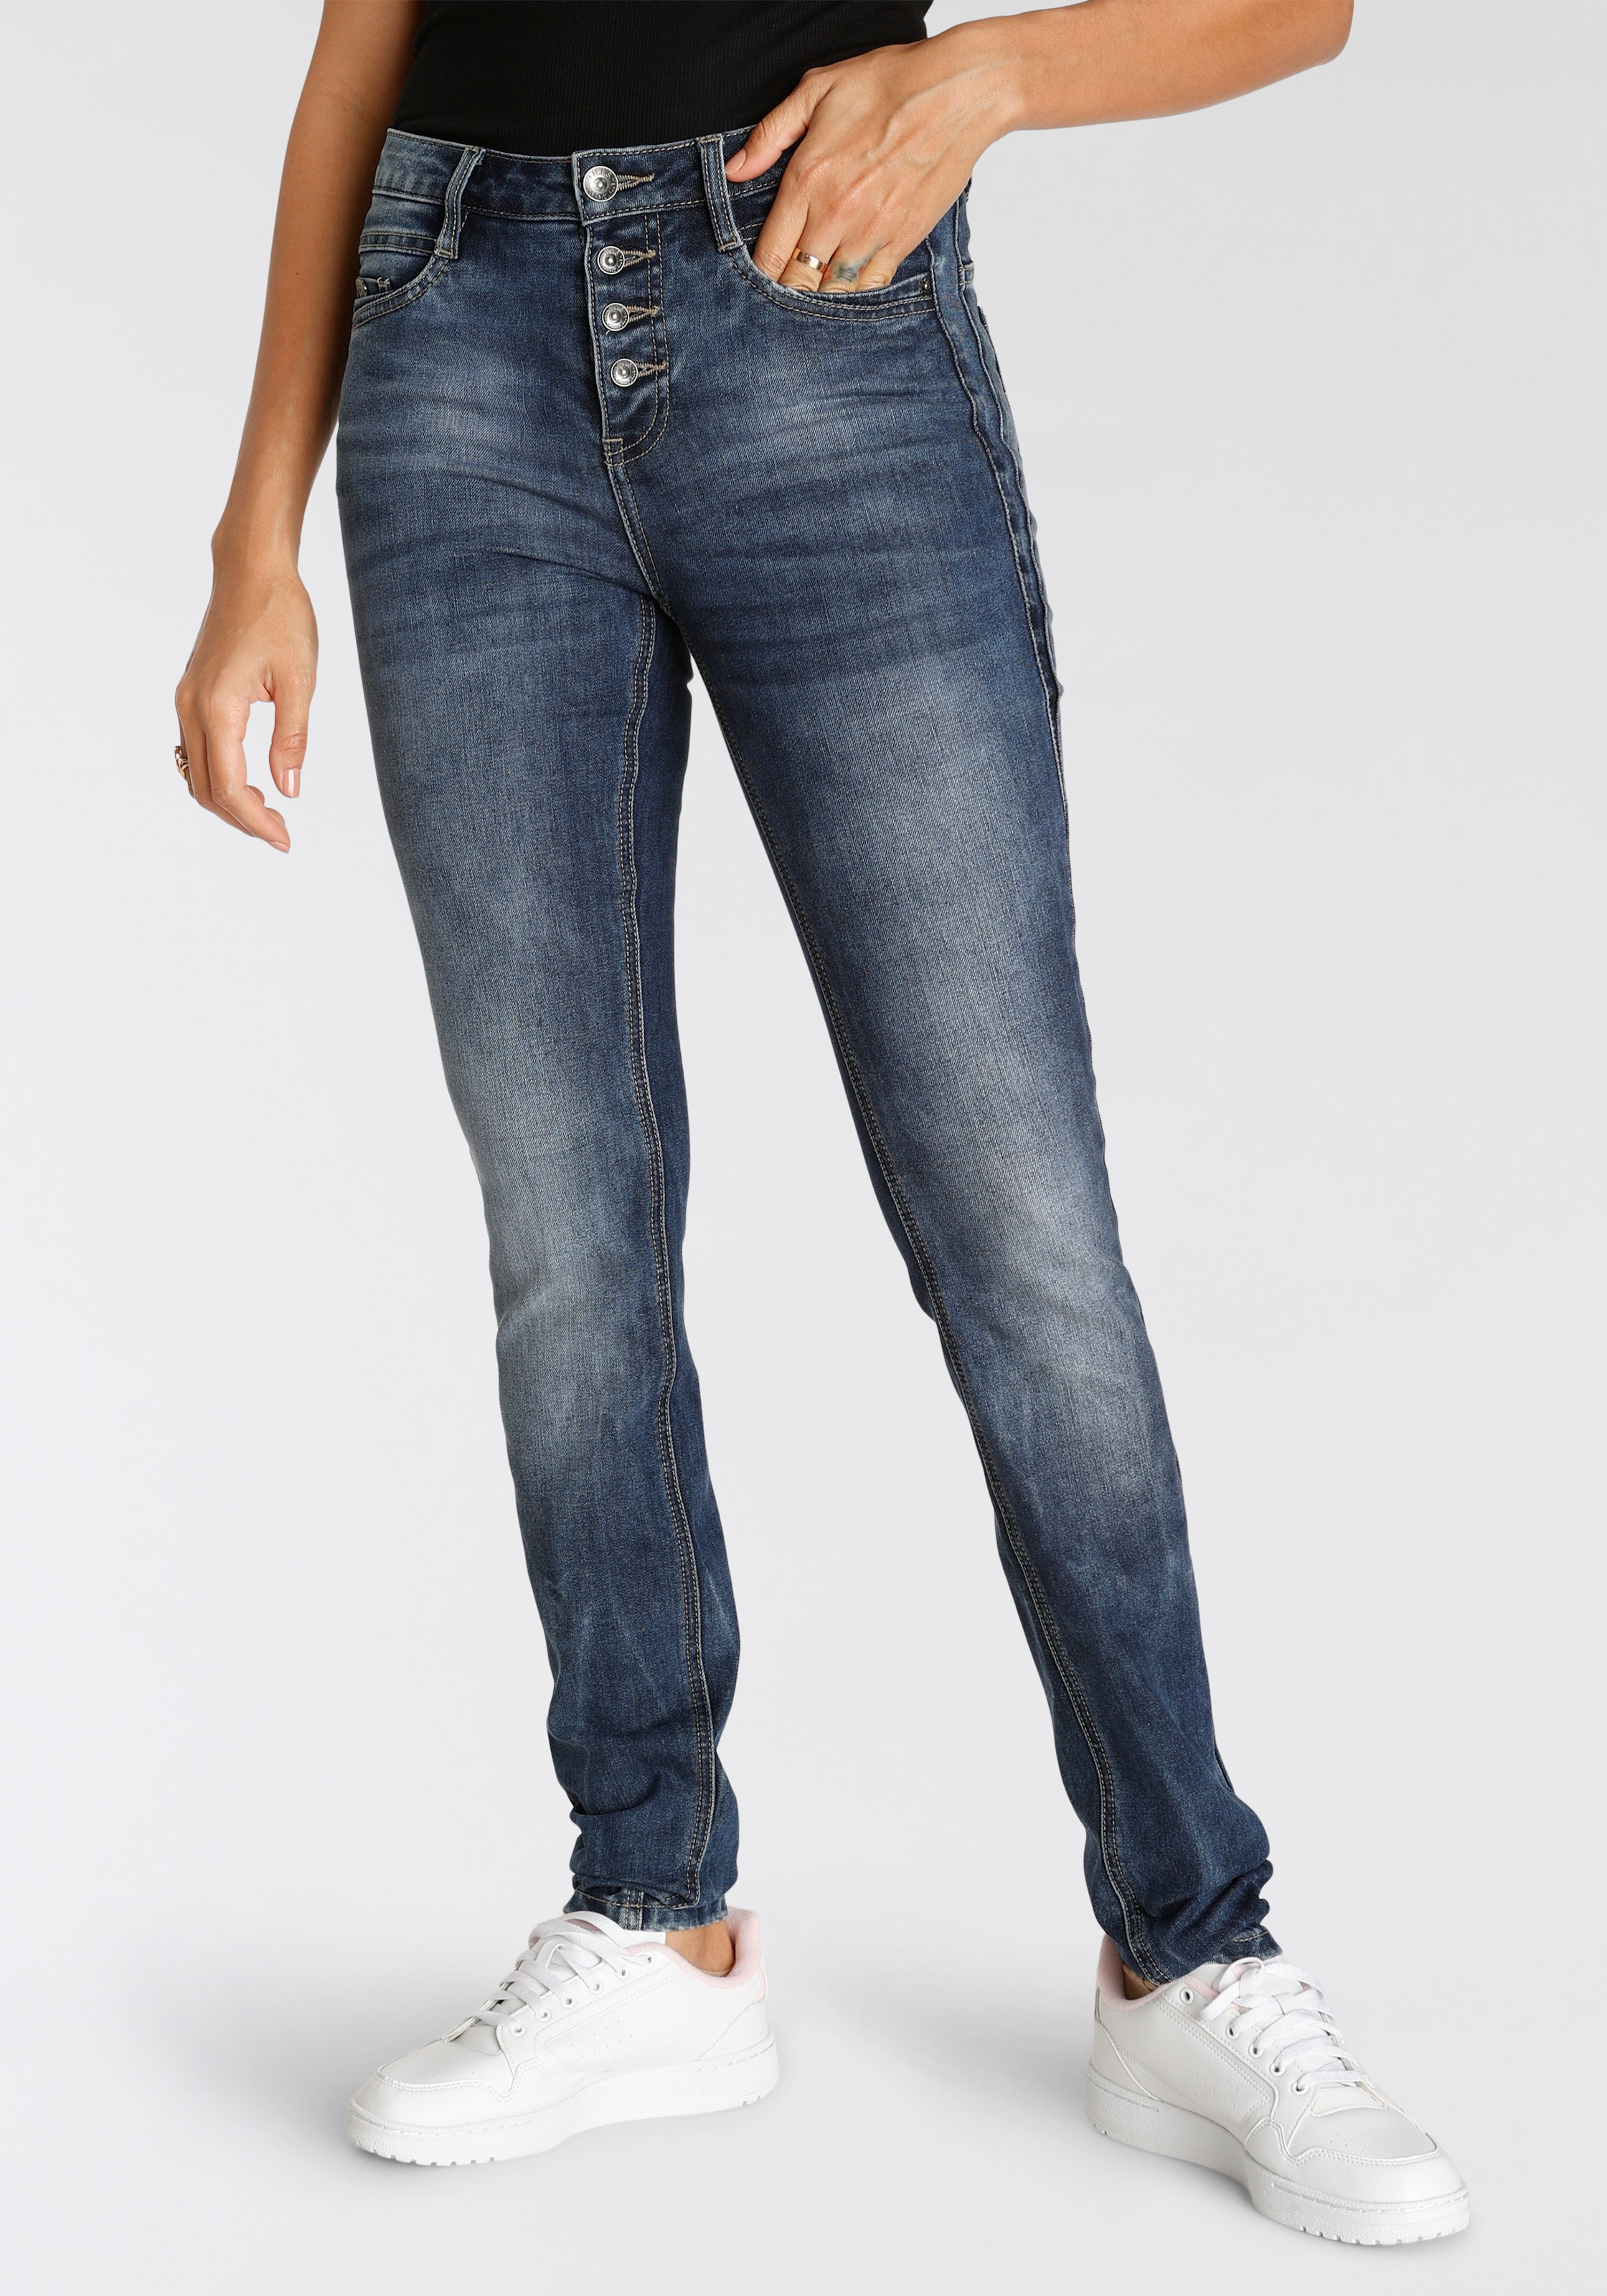 Modetrends online jetzt Jeans shoppen aktuelle Damen His -